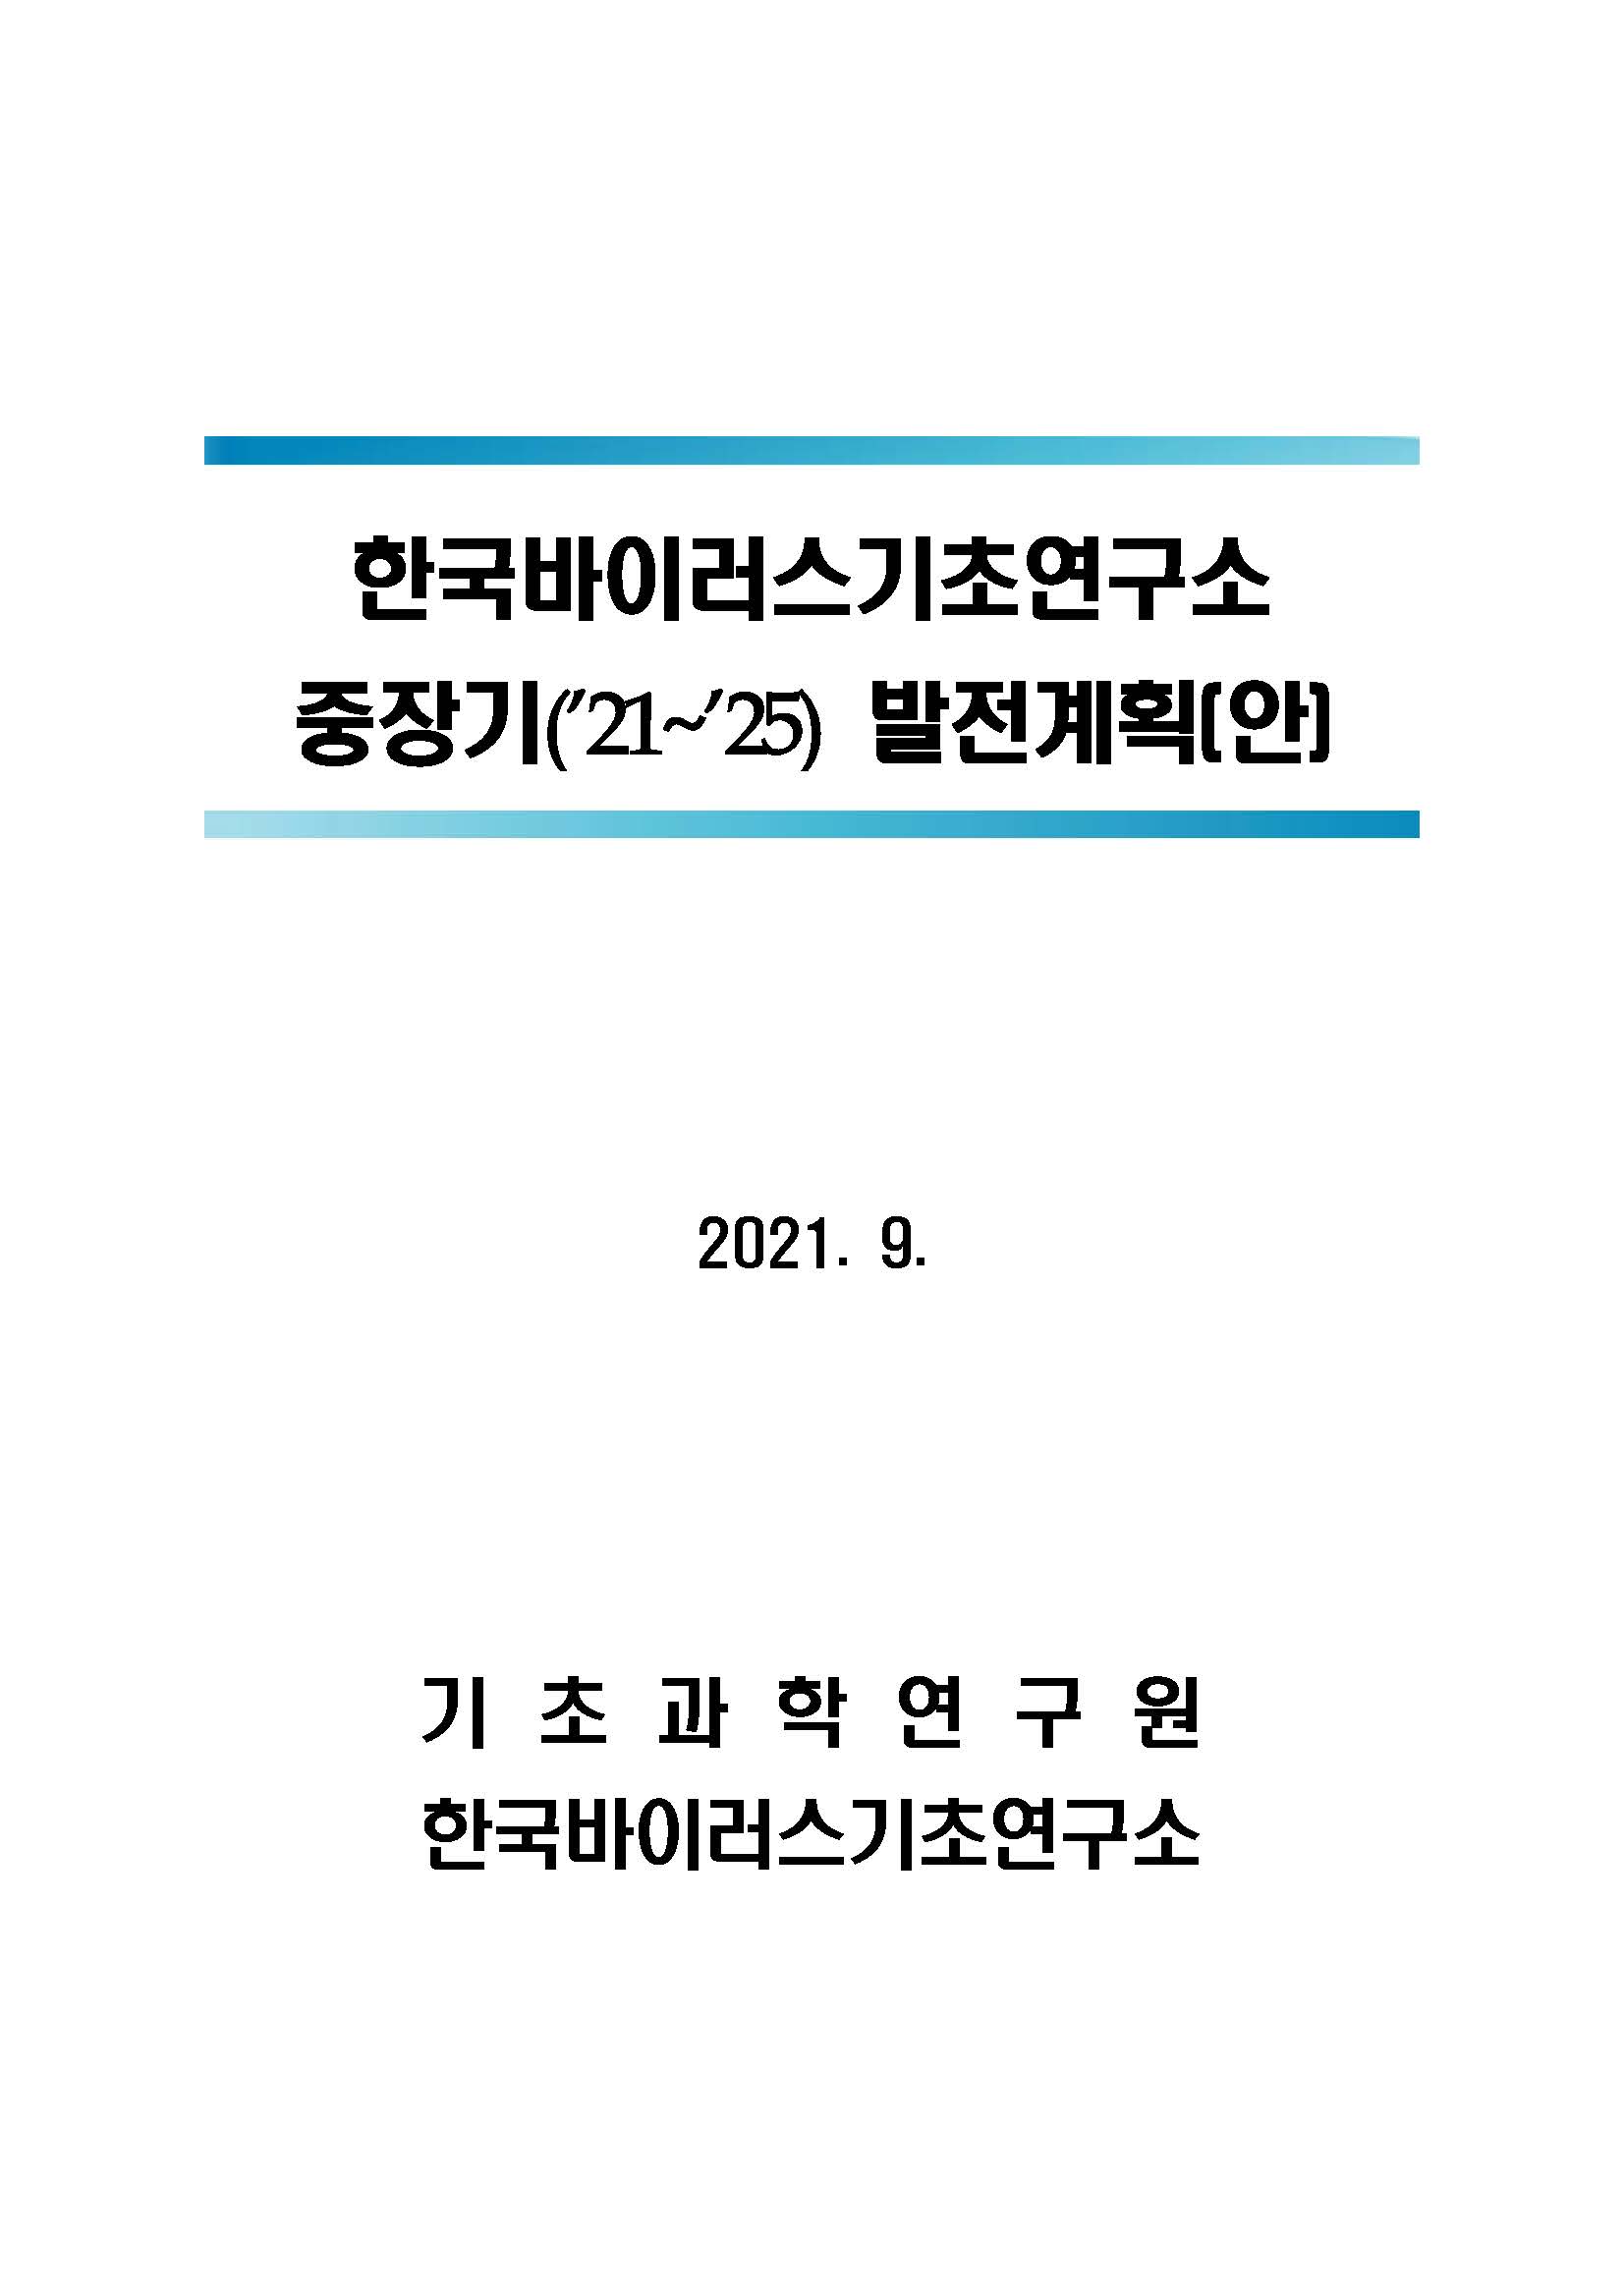 한국바이러스기초연구소 중장기(’21~’25) 발전계획안 사진